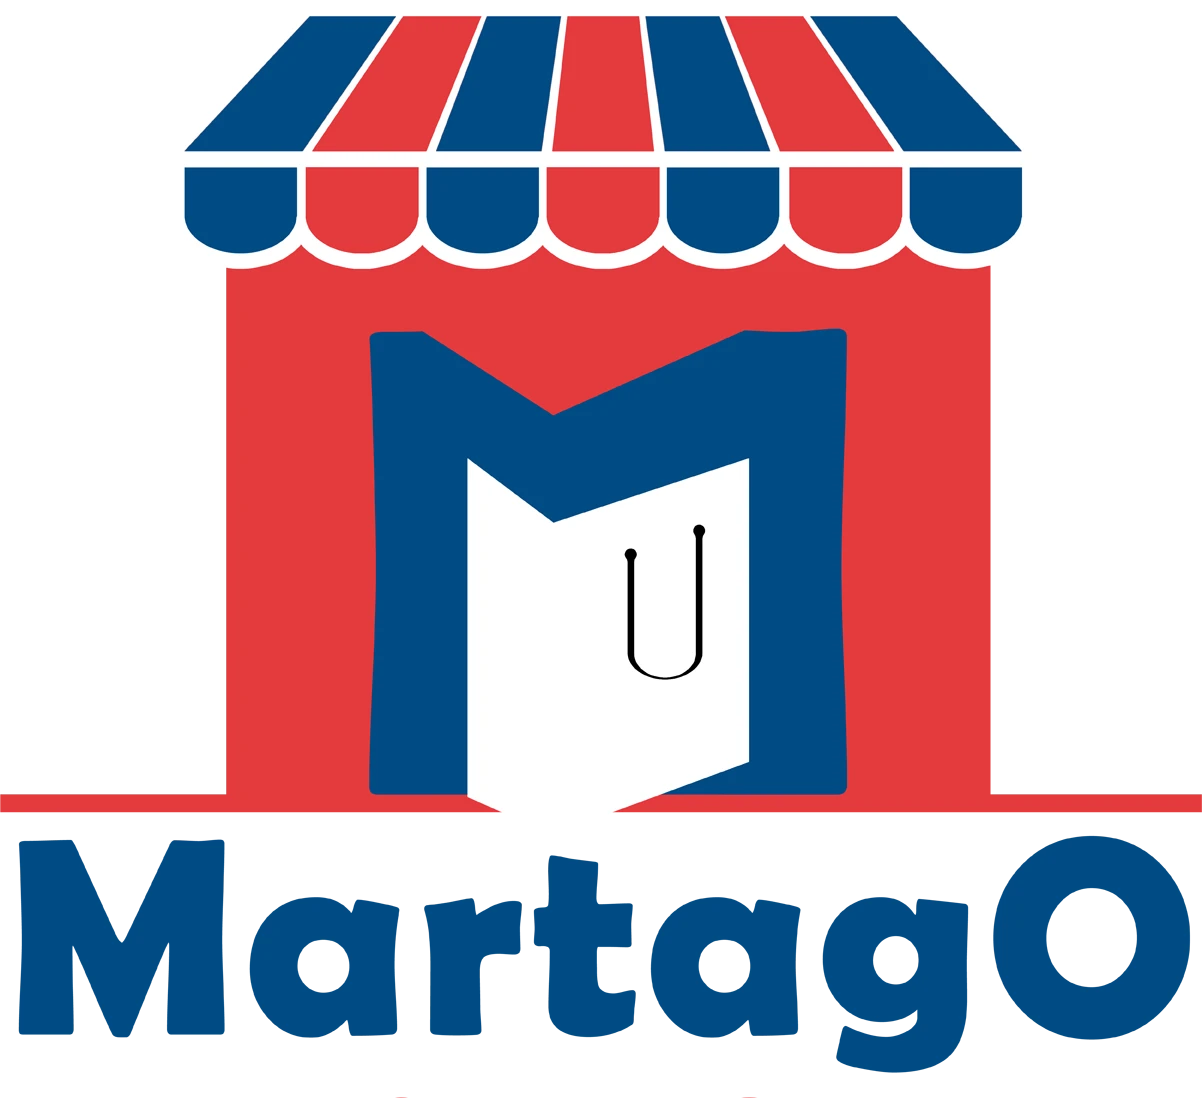 Martago